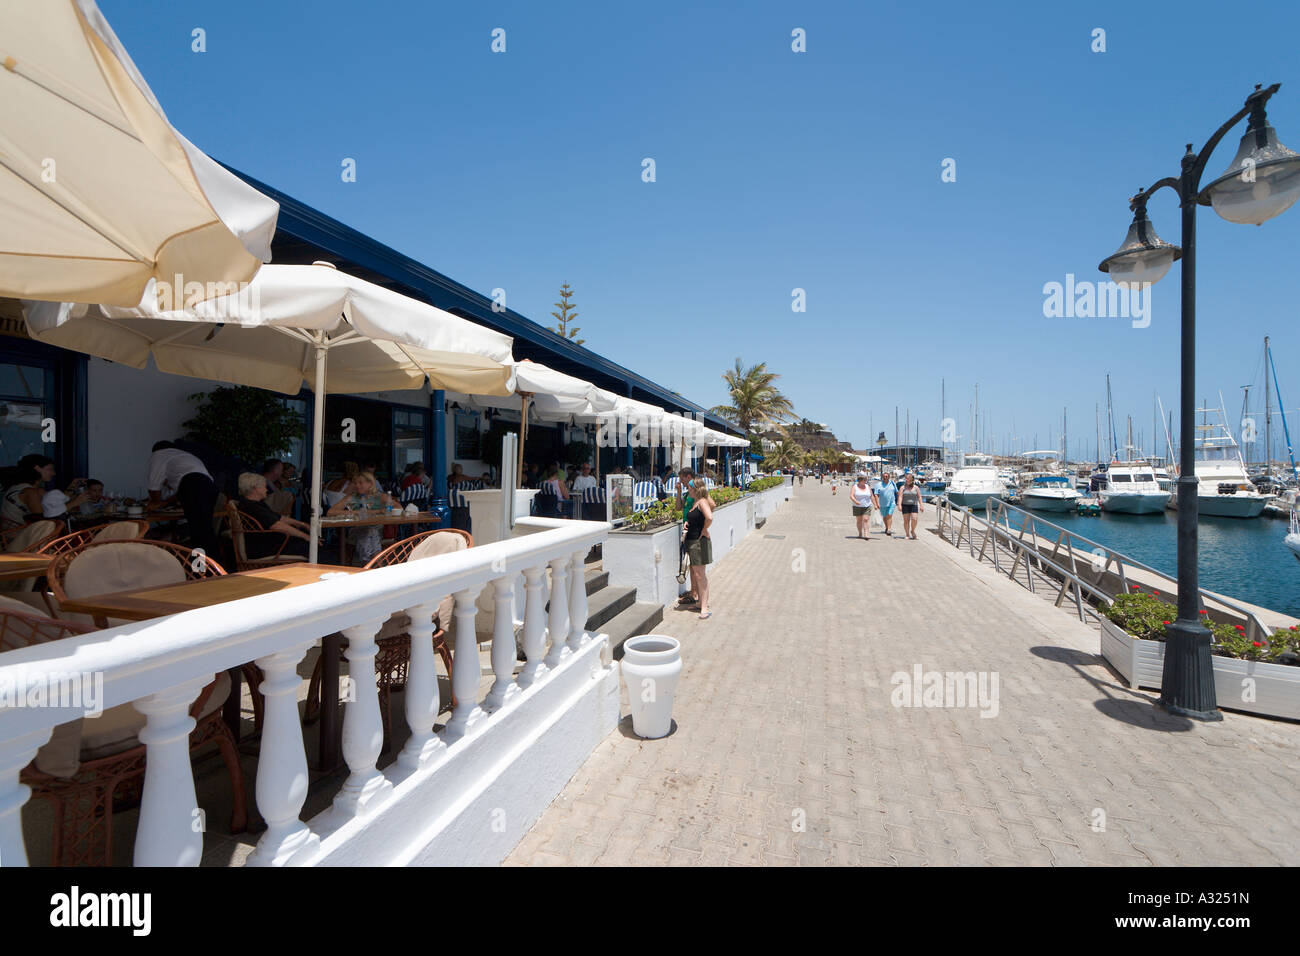 Restaurant à quai, Puerto Calero, Lanzarote, îles Canaries, Espagne Banque D'Images